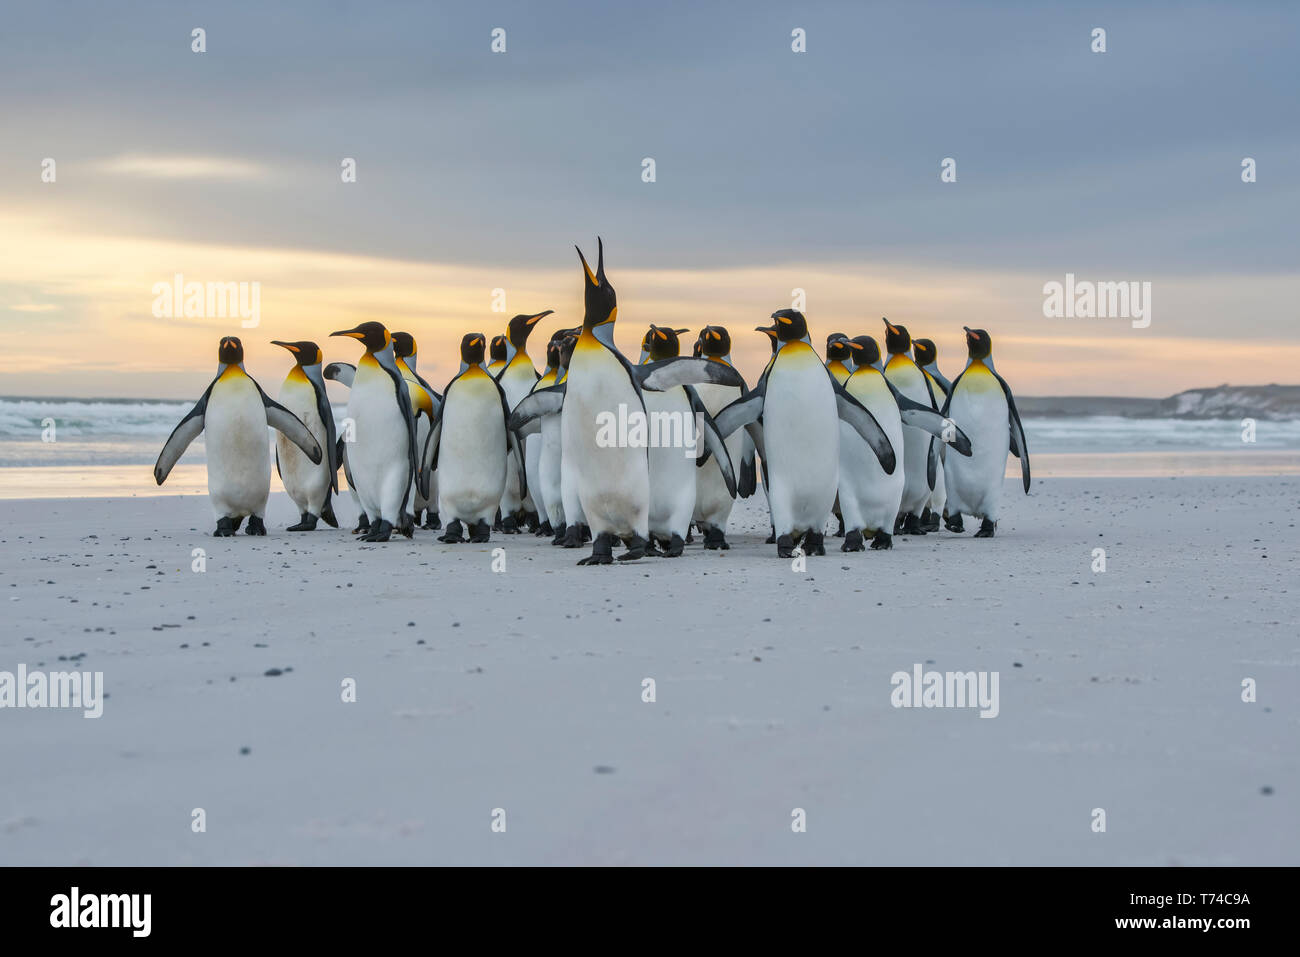 Pingüinos rey (Aptenodytes patagonicus) caminando junto a la orilla, Punto de voluntarios; Islas Malvinas Foto de stock